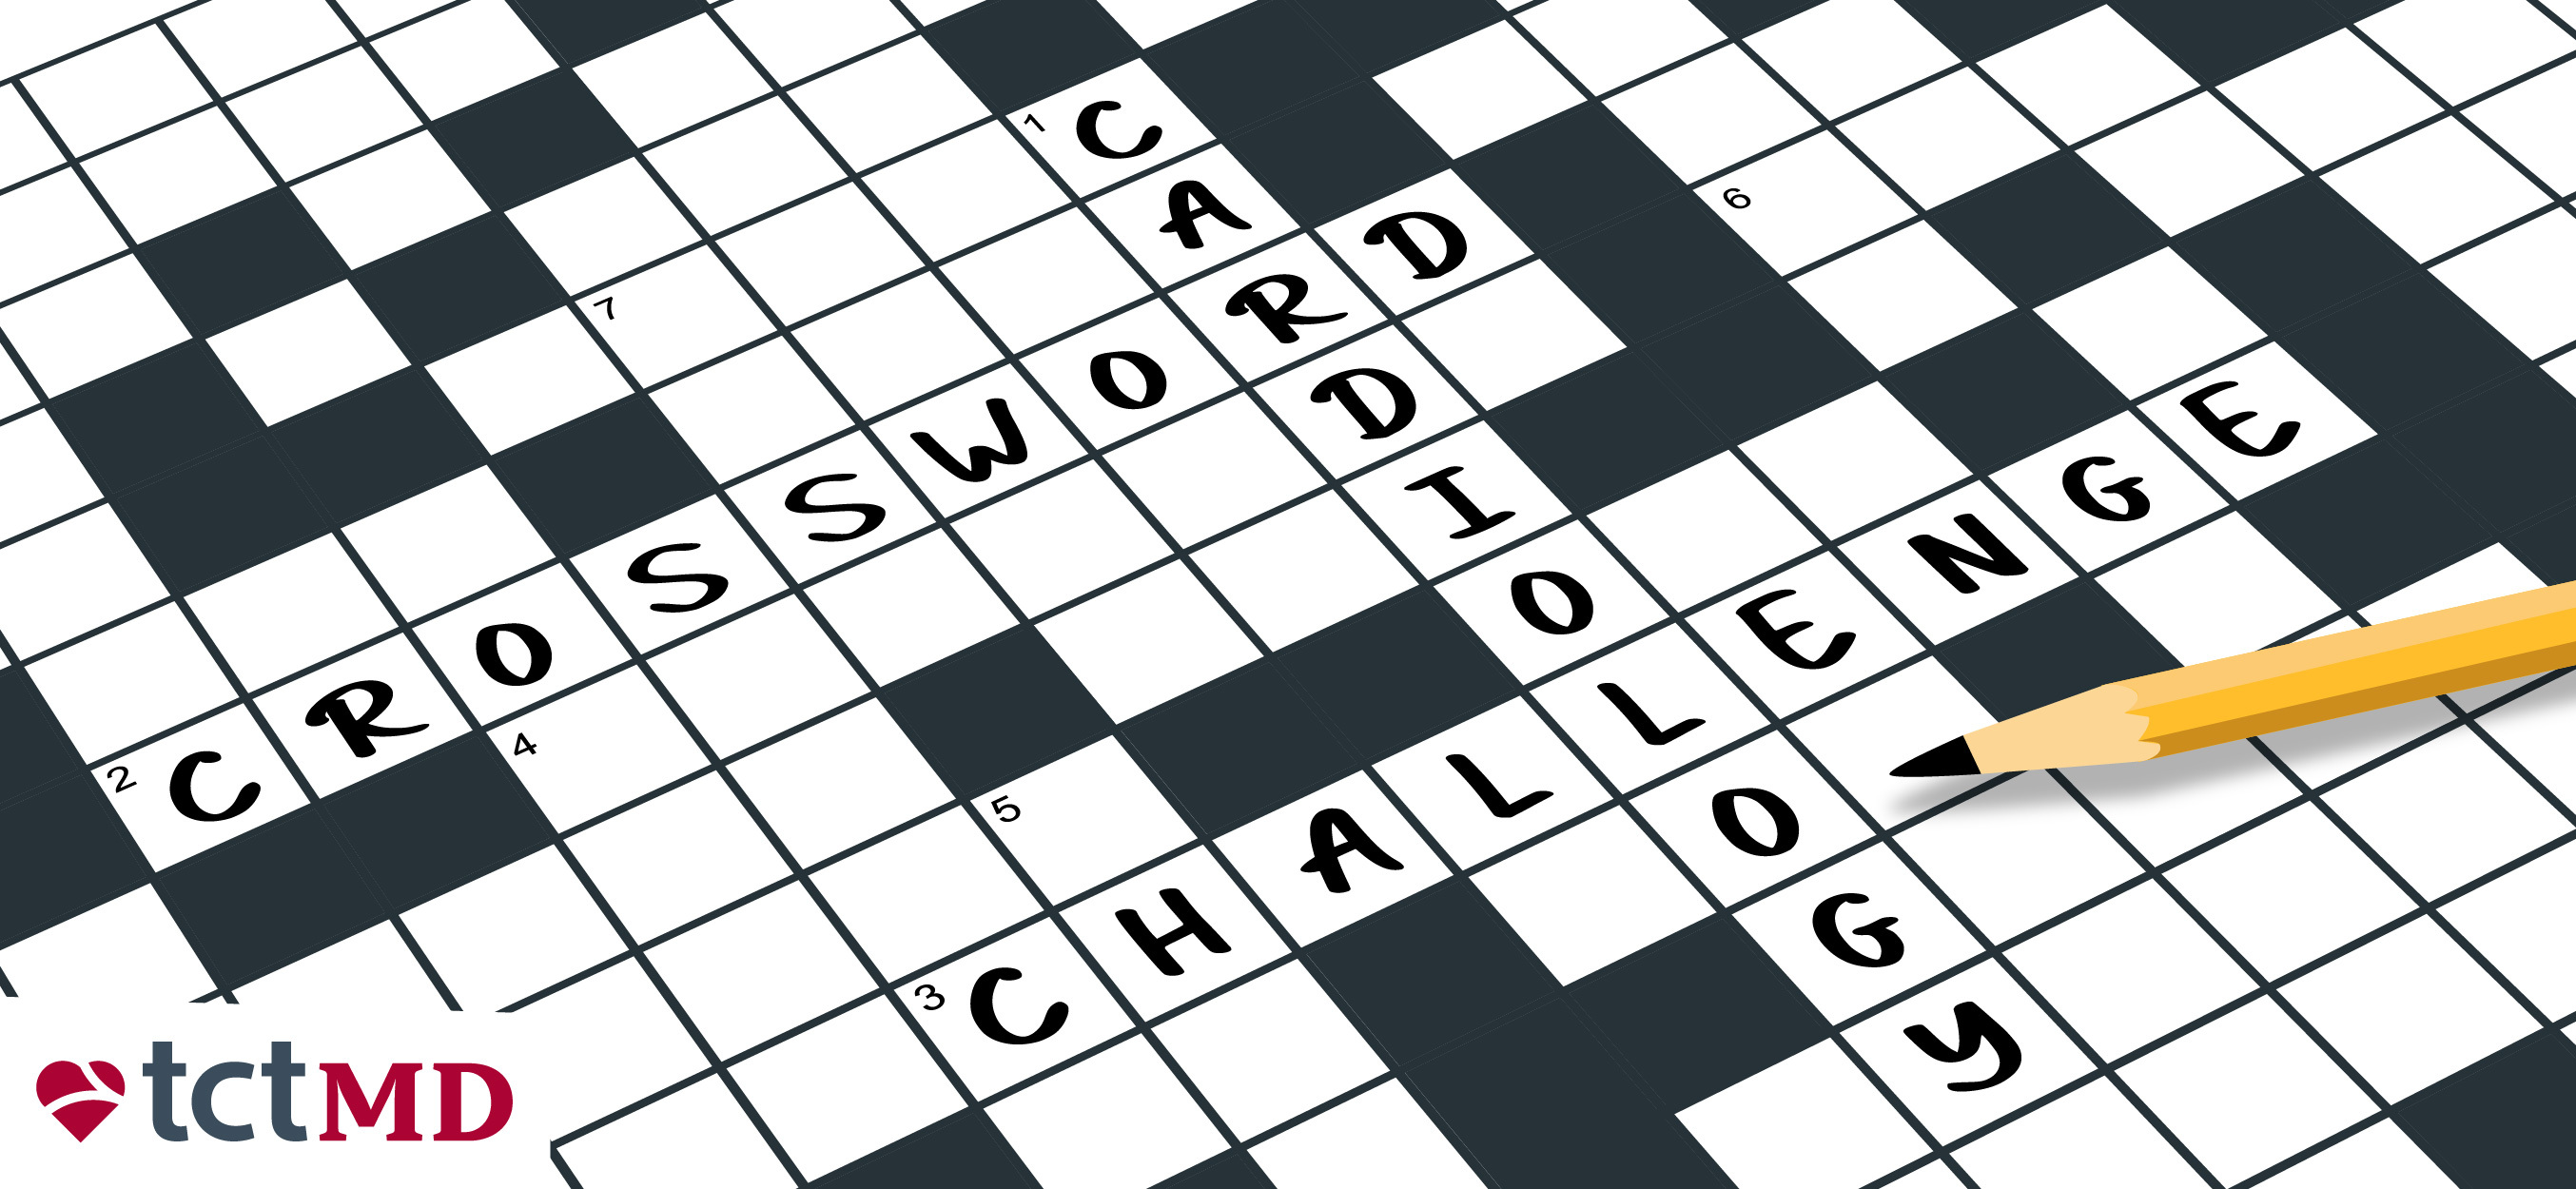 Crossword Challenge